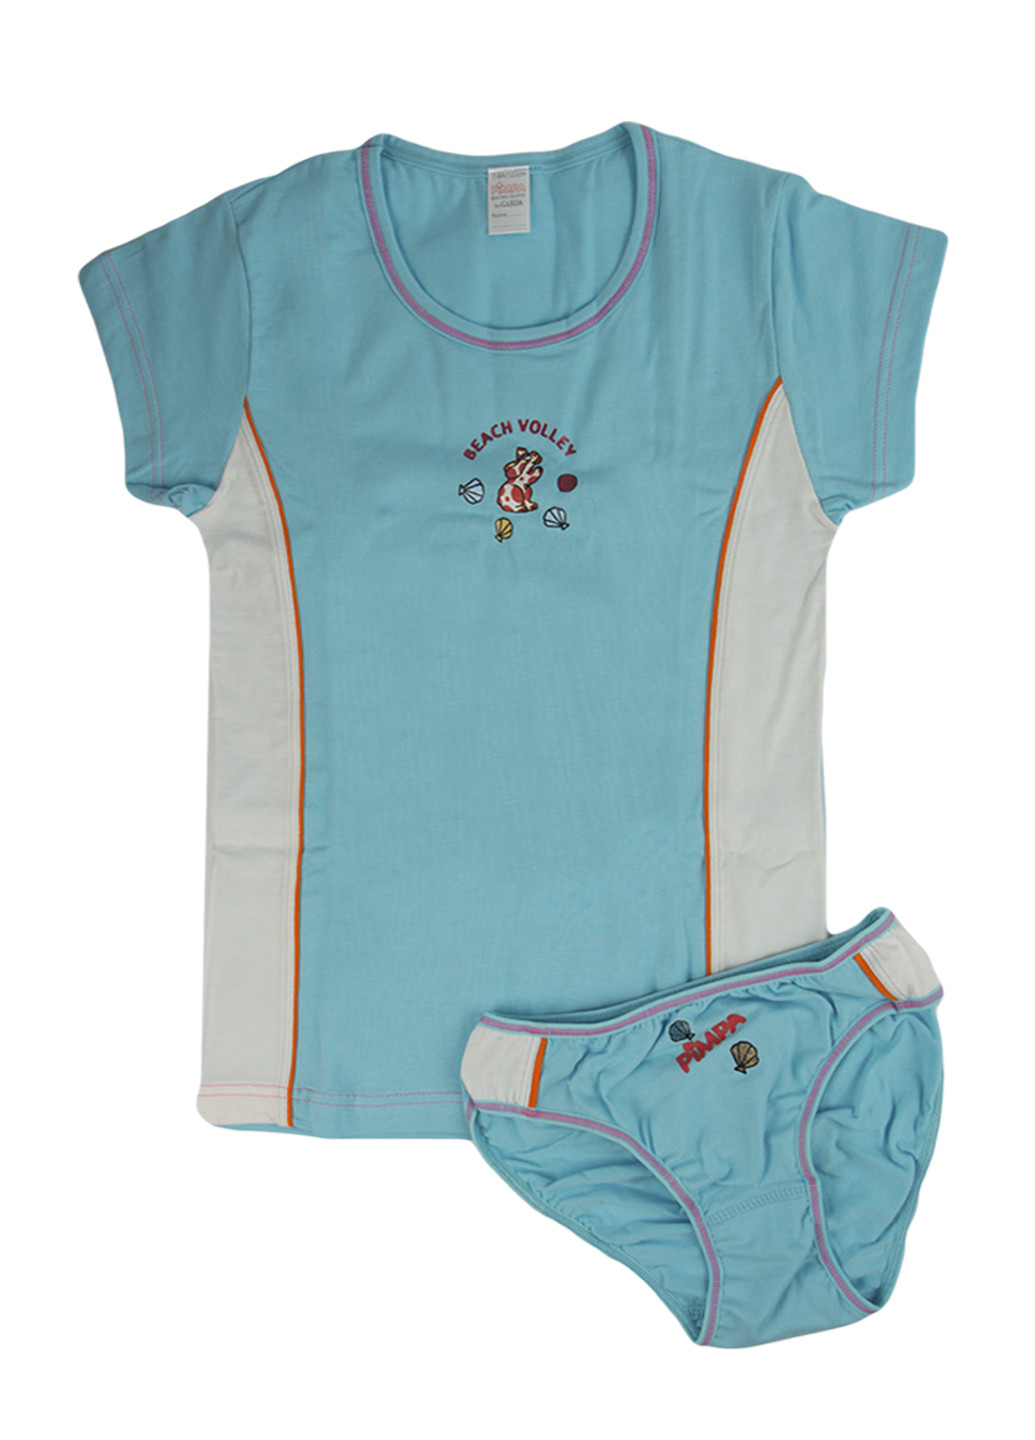 Бірюзовий демісезонний комплект (футболка, трусики) Pimpa